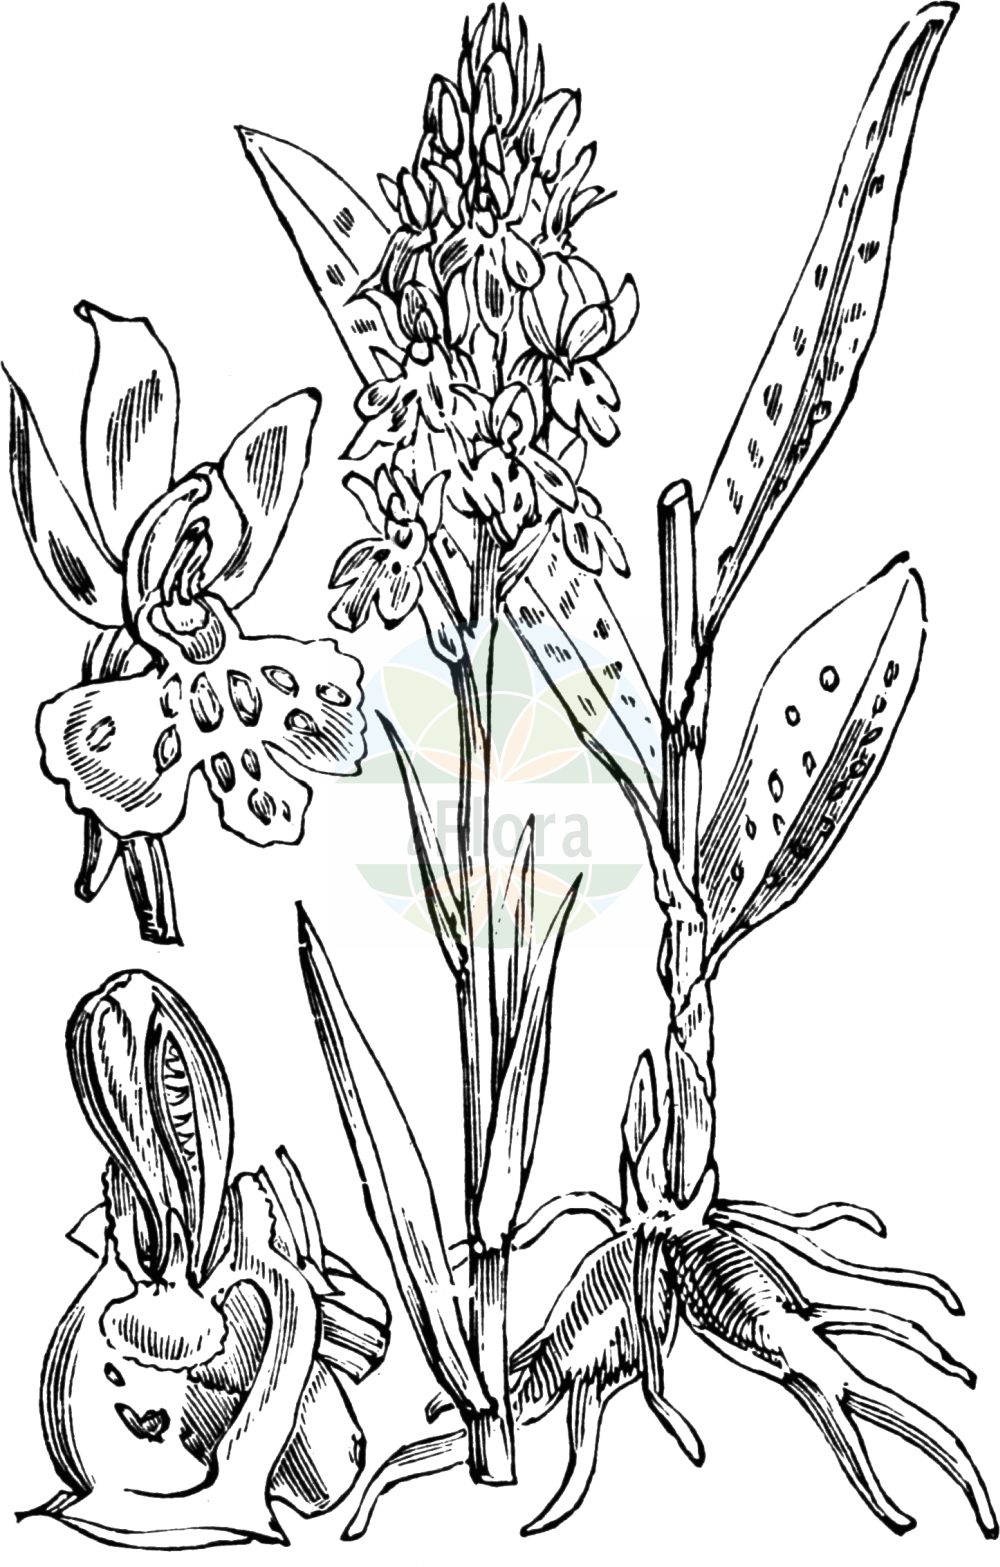 Historische Abbildung von Dactylorhiza maculata agg. (Geflecktes Knabenkraut - Heath Spotted-orchid). Das Bild zeigt Blatt, Bluete, Frucht und Same. ---- Historical Drawing of Dactylorhiza maculata agg. (Geflecktes Knabenkraut - Heath Spotted-orchid). The image is showing leaf, flower, fruit and seed.(Dactylorhiza maculata agg.,Geflecktes Knabenkraut,Heath Spotted-orchid,Geflecktes Knabenkraut,Geflecktes Knabenkraut,Gefleckte Fingerwurz,Heide-Knabenkraut,Heath Spotted-orchid,Moorland Spotted Orchid,Dactylorhiza,Knabenkraut,Keyflower,Orchidaceae,Knabenkrautgewächse,Orchid family,Blatt,Bluete,Frucht,Same,leaf,flower,fruit,seed,Fitch et al. (1880))